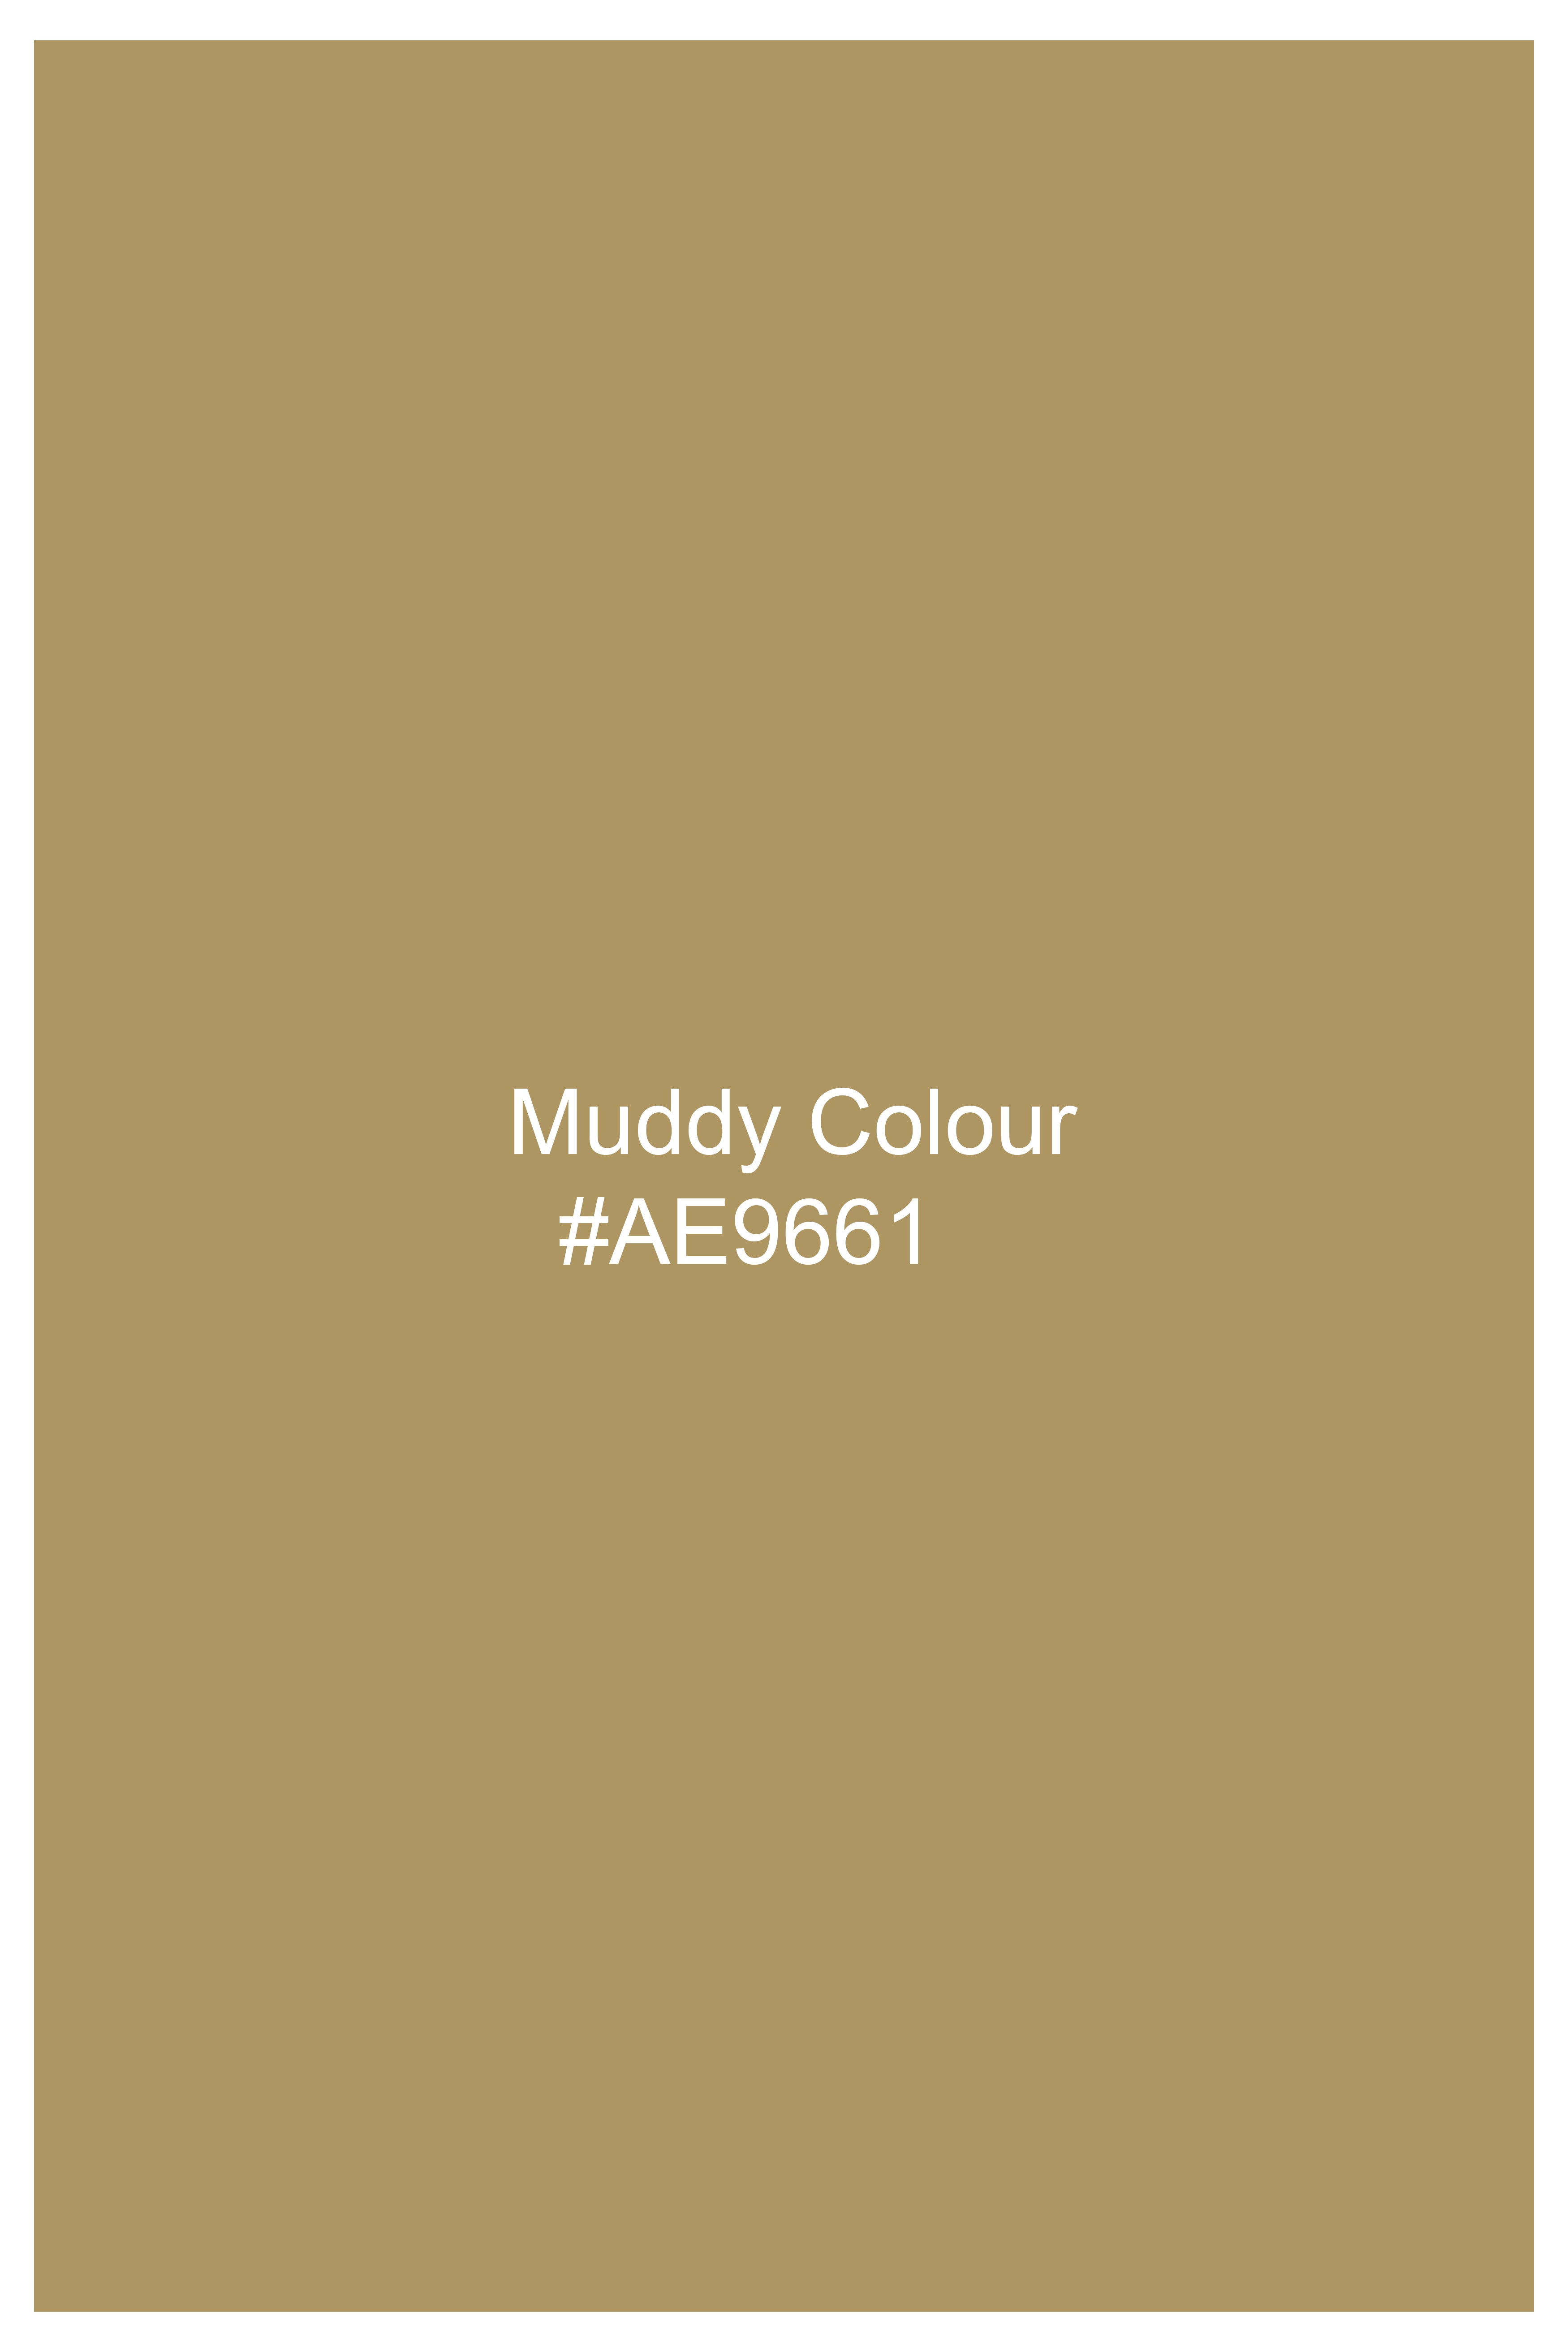 Muddy Brown Striped Wool Rich Designer Blazer BL2861-SBP-D318-36, BL2861-SBP-D318-38, BL2861-SBP-D318-40, BL2861-SBP-D318-42, BL2861-SBP-D318-44, BL2861-SBP-D318-46, BL2861-SBP-D318-48, BL2861-SBP-D318-50, BL2861-SBP-D318-52, BL2861-SBP-D318-54, BL2861-SBP-D318-56, BL2861-SBP-D318-58, BL2861-SBP-D318-60